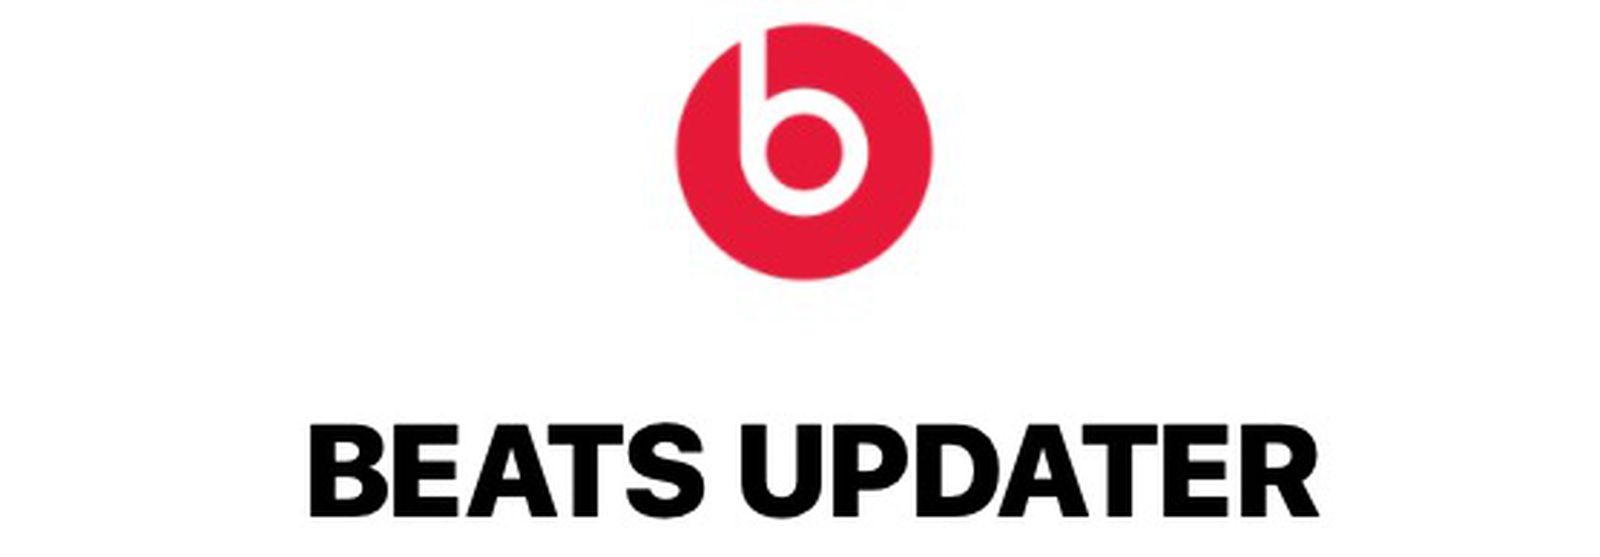 beats updater update wont download